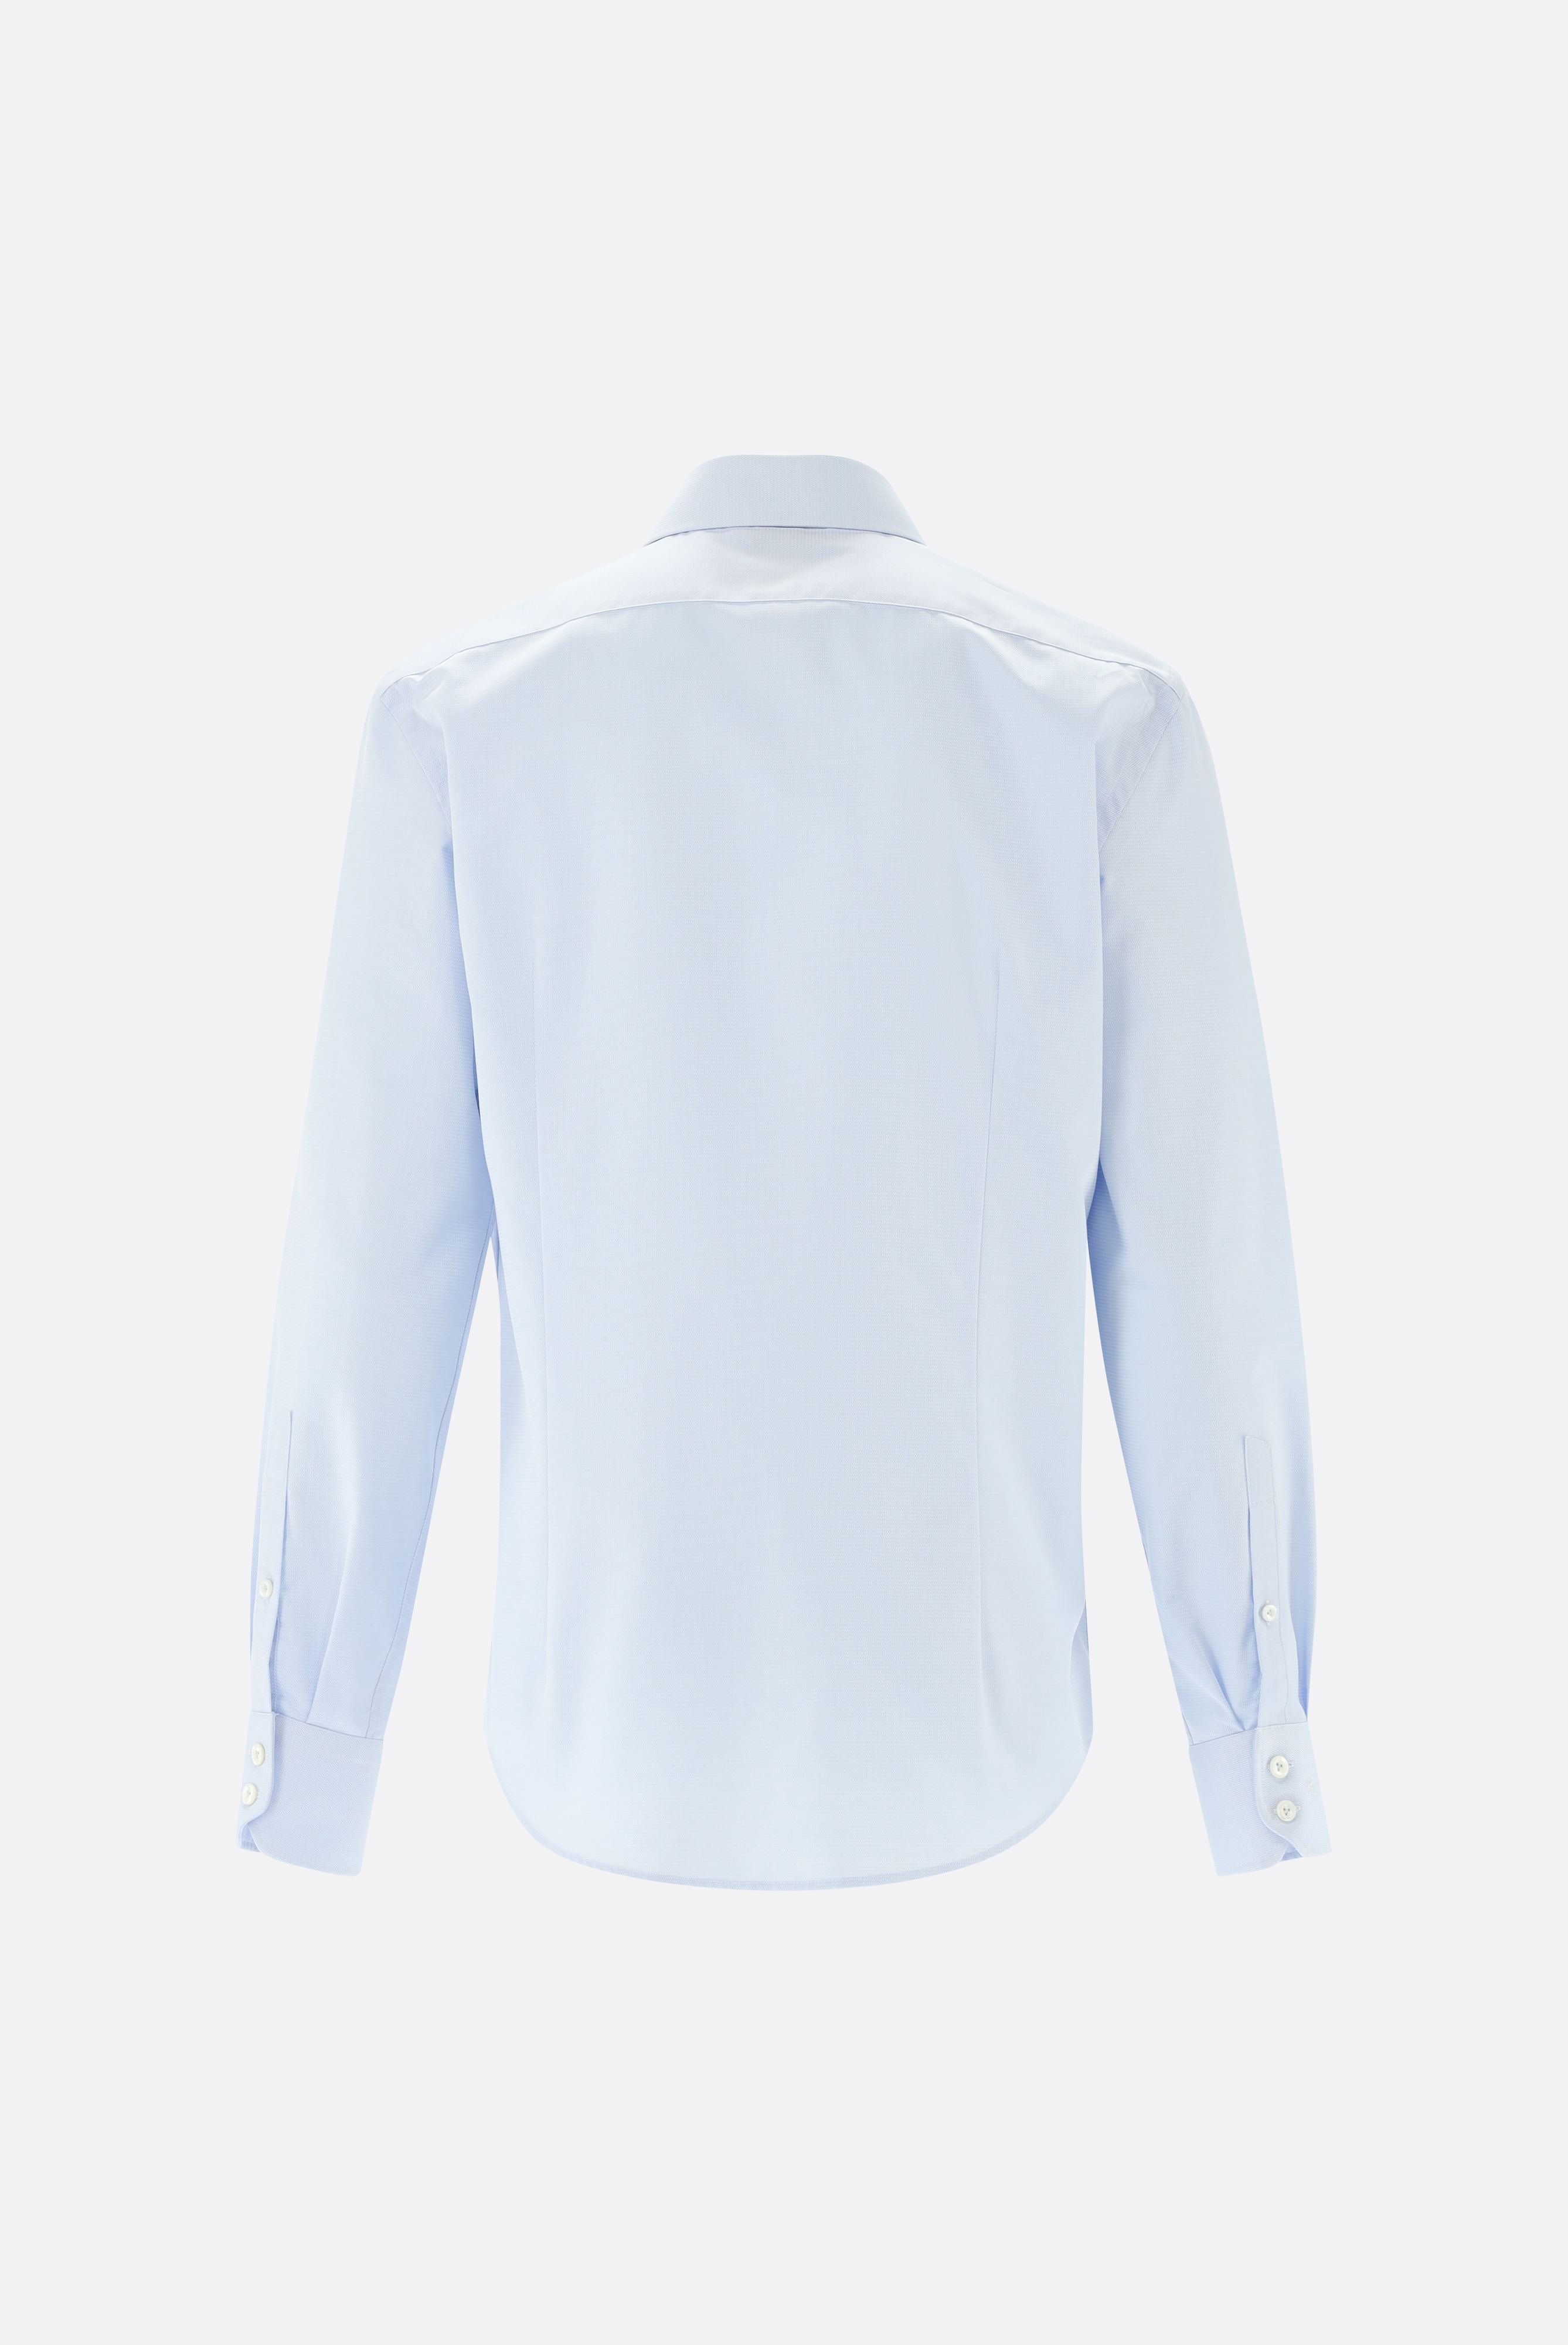 Bügelleichte Hemden+Bügelfreies Twil Hemd mit Struktur Tailor Fit+20.2020.BQ.150301.720.41